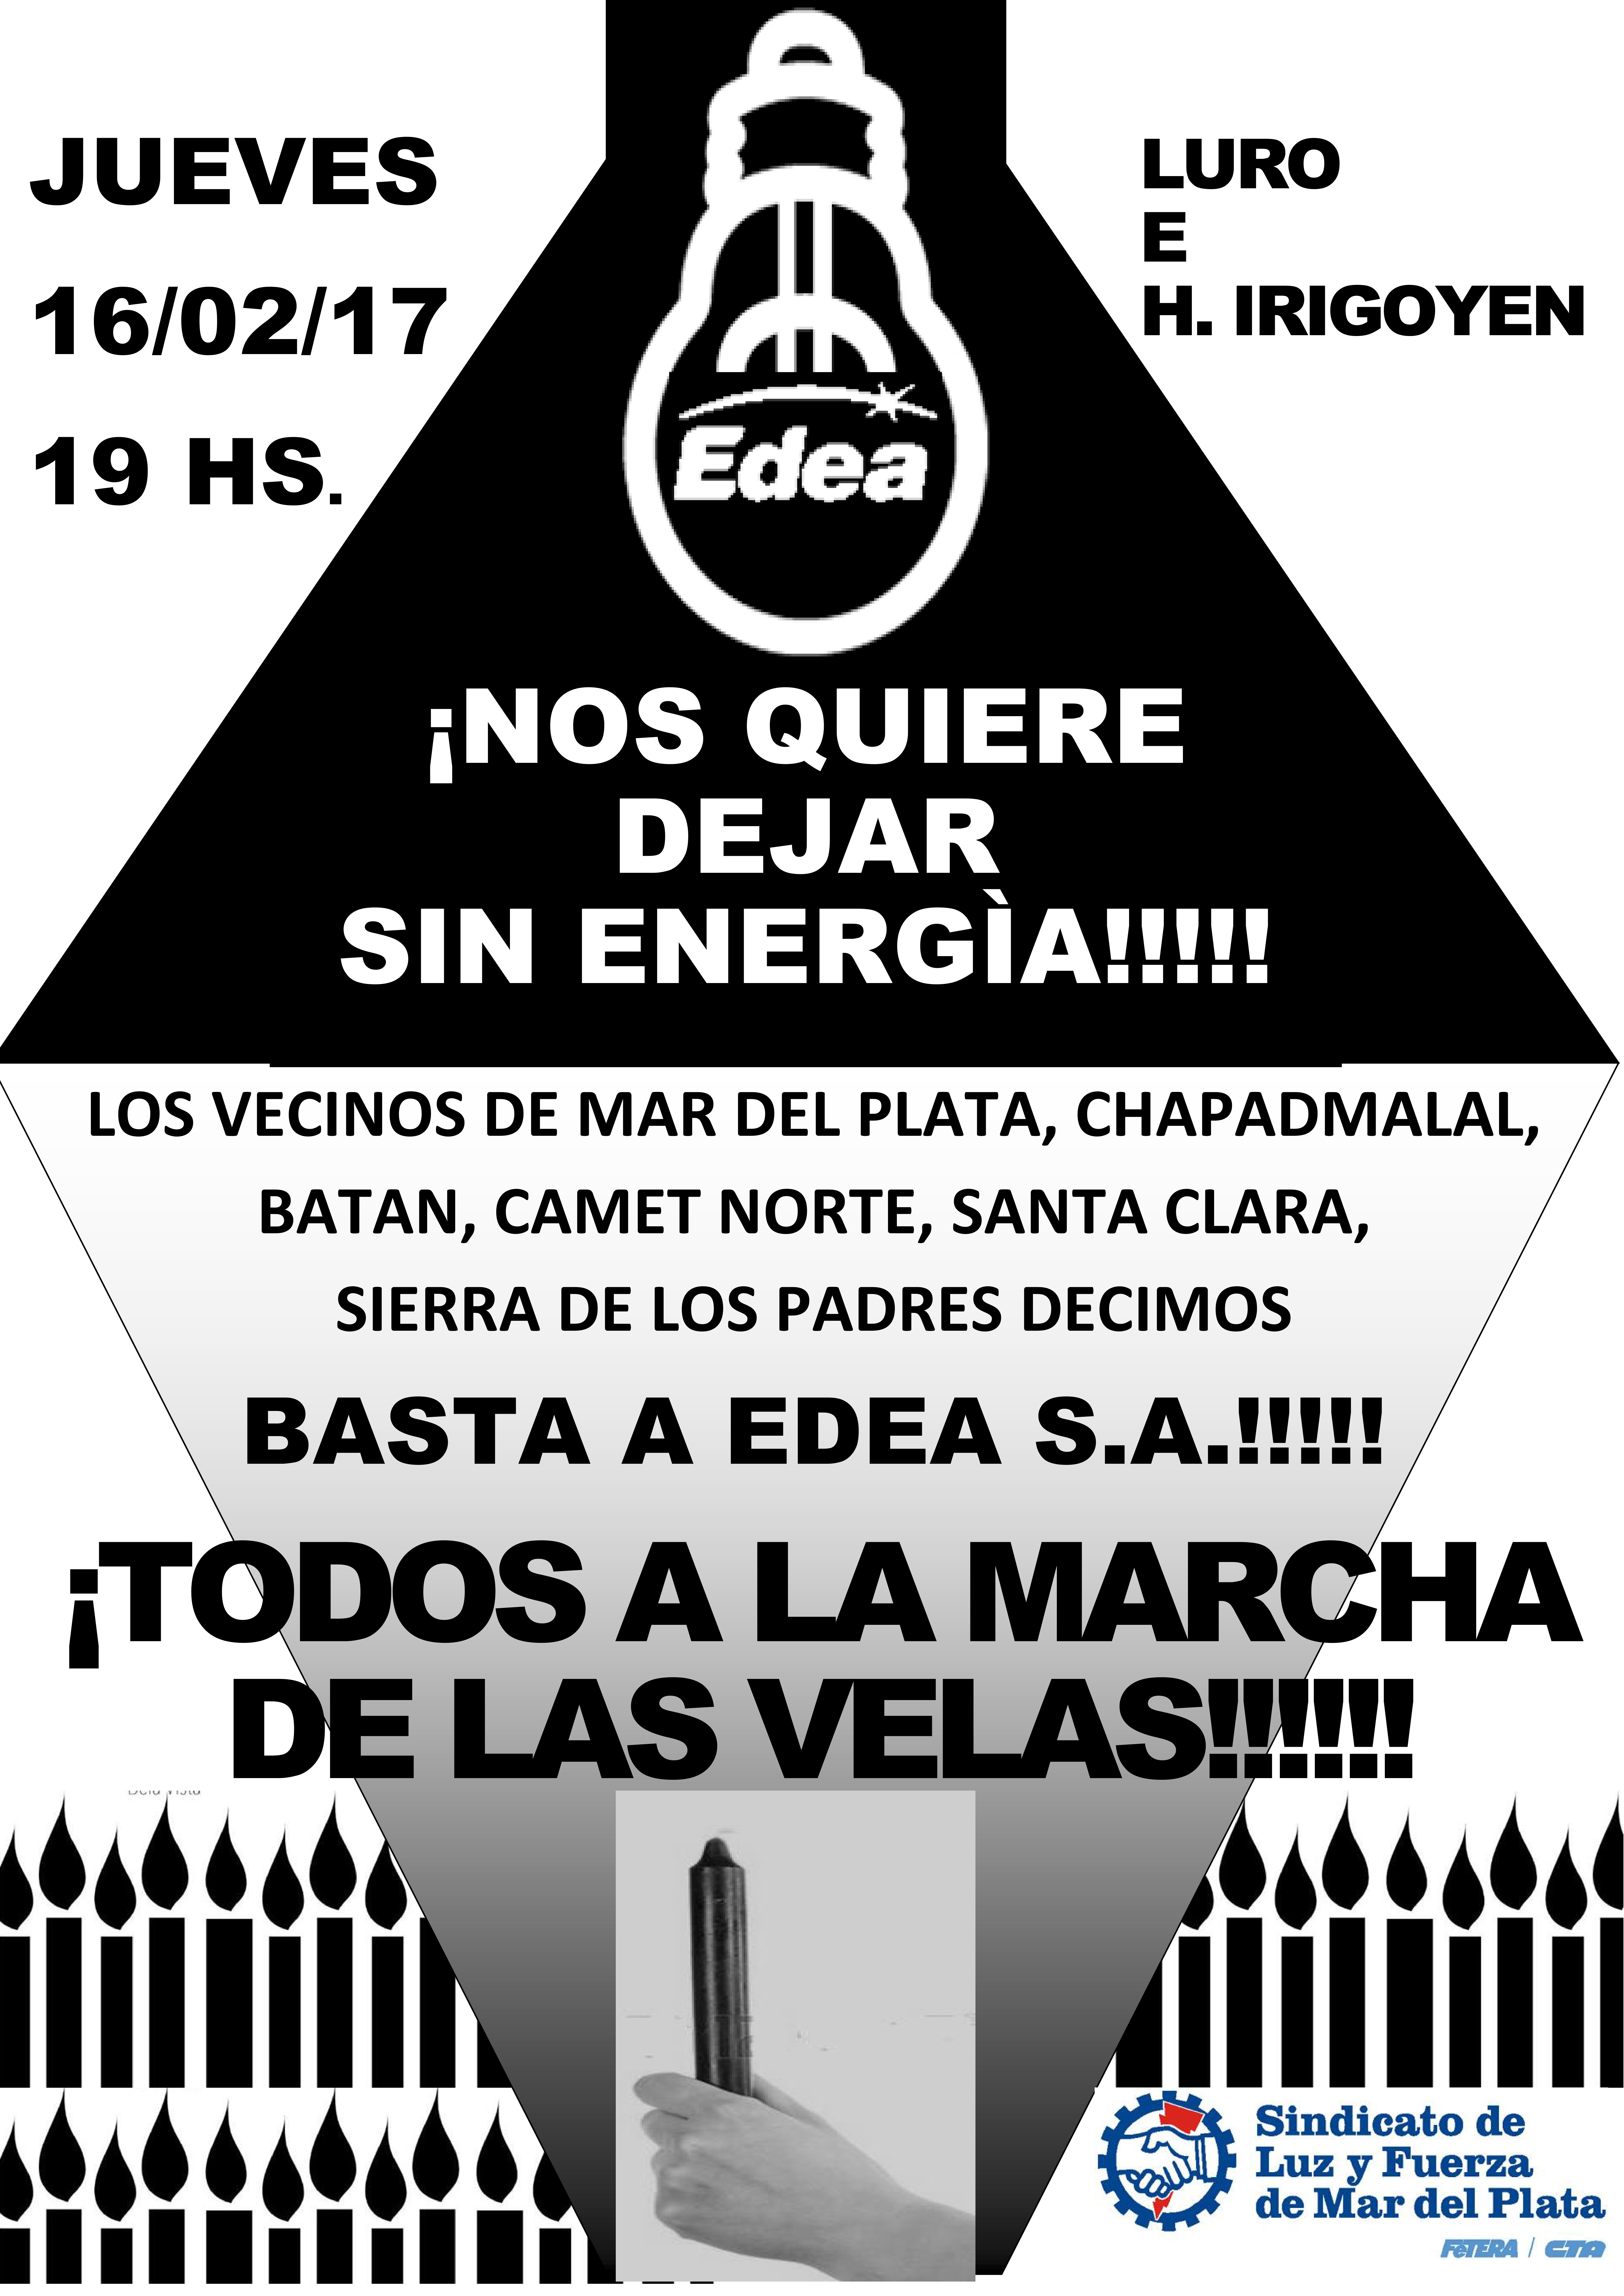 JUEVES 16/2: MARCHA DE LAS VELAS - BASTA DE EDEA SA!